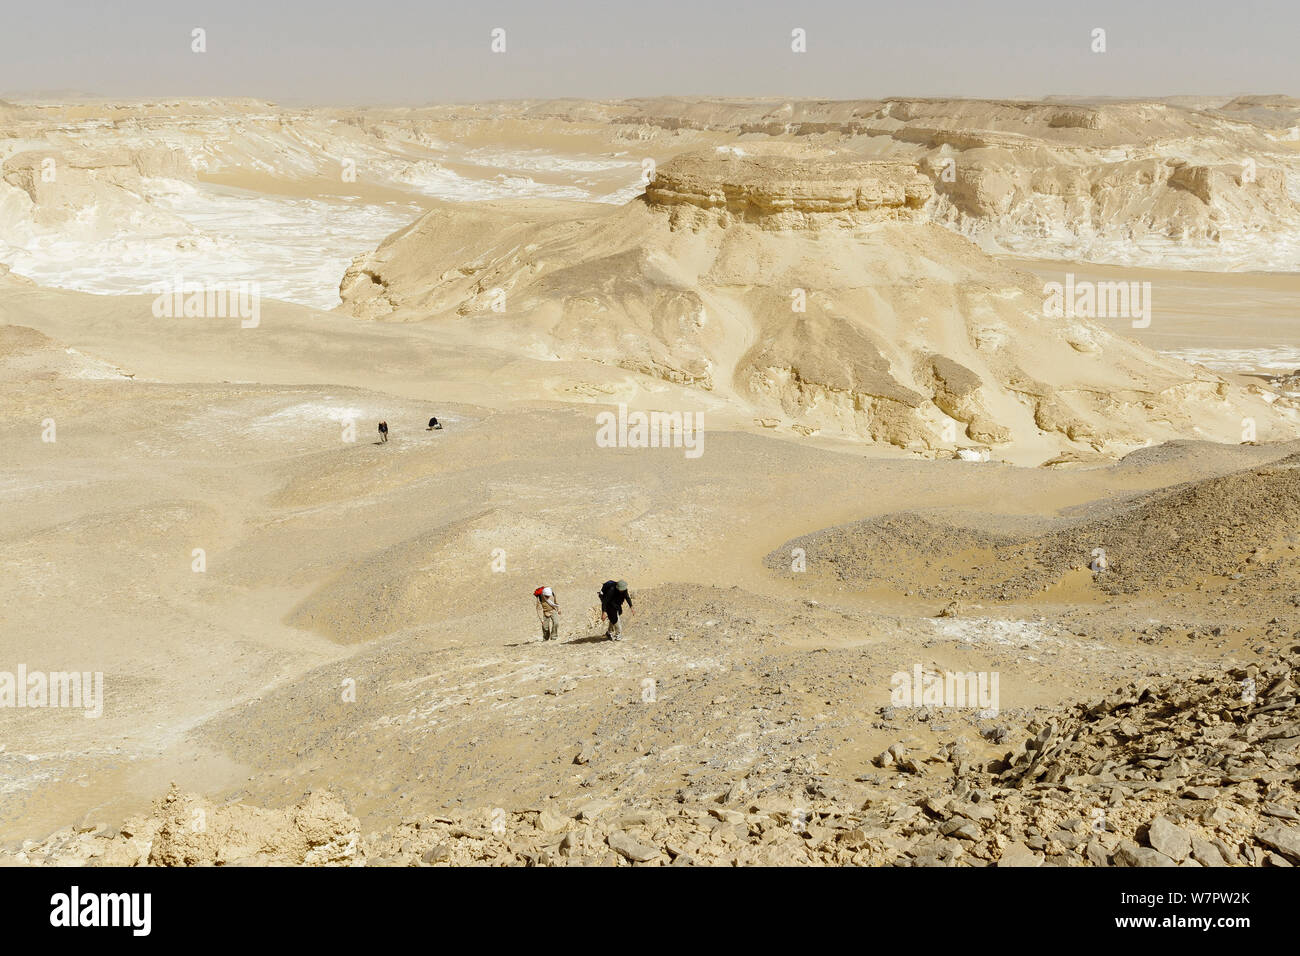 Persone trekking attraverso chalk formazioni rocciose creato da tempeste di sabbia, bianco deserto del Sahara, Egitto, Febbraio 2009 Foto Stock